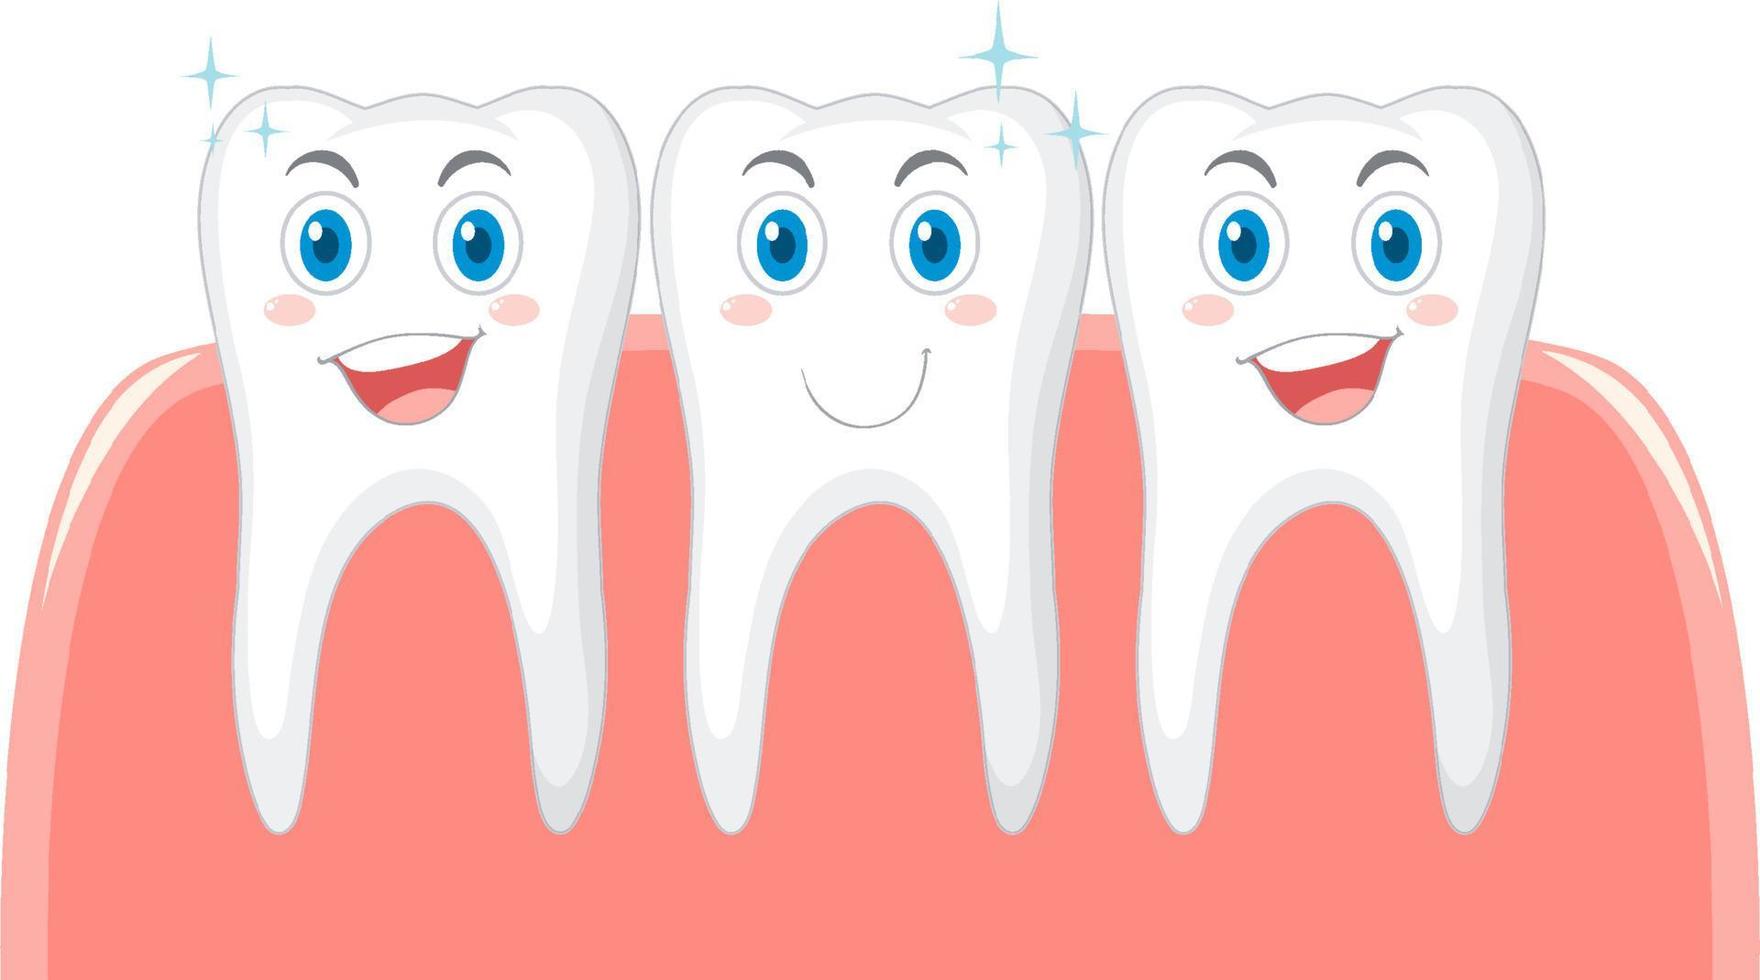 rengöring av tand- och tandköttshälsan vektor